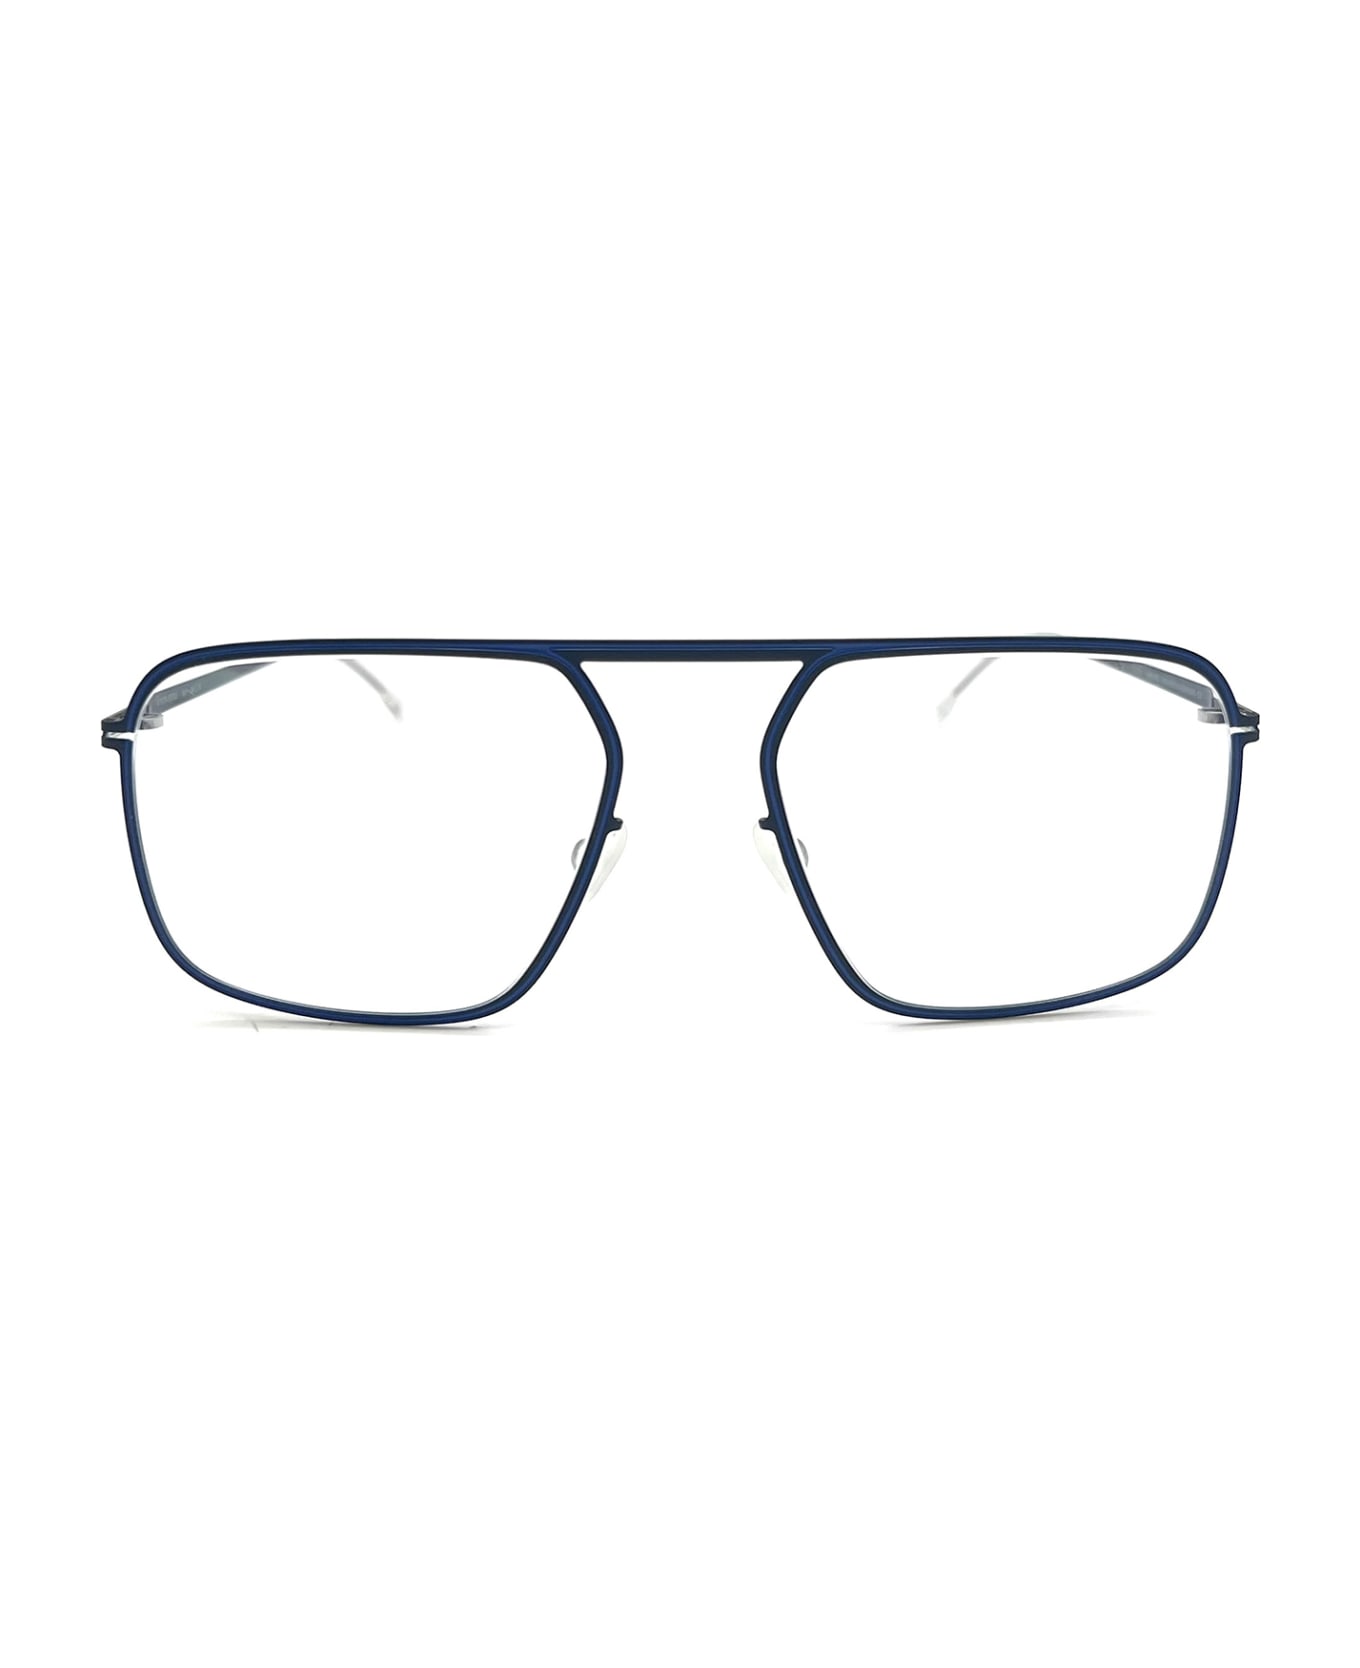 Mykita STUDIO 6.8 Eyewear - Navy/yale Blue アイウェア